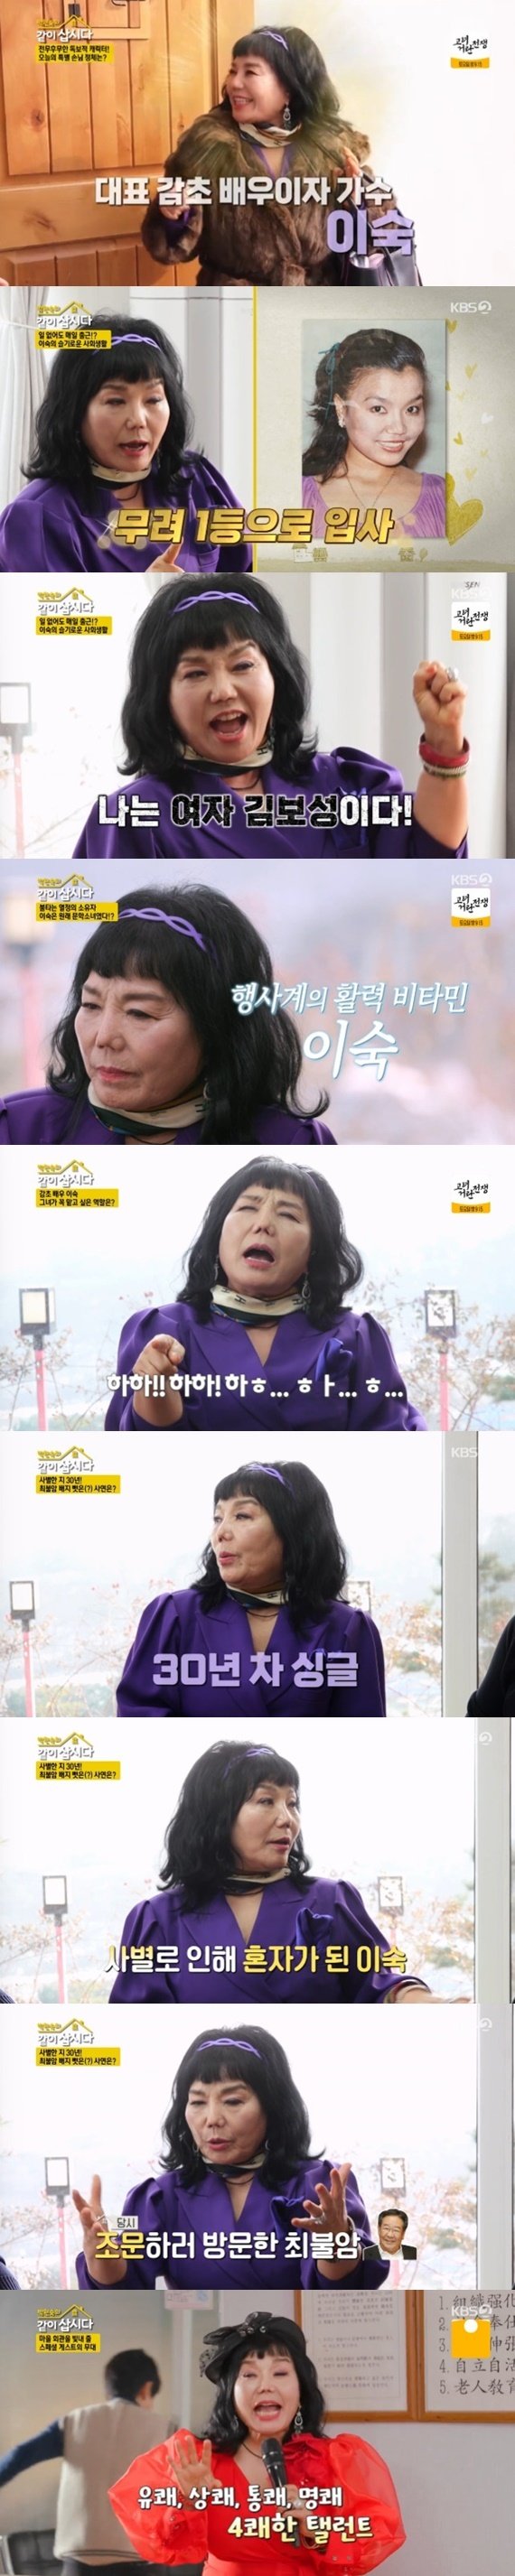 이숙 정치인 남편과 사별한 지 30년…열정 근황 공개 [RE:TV]